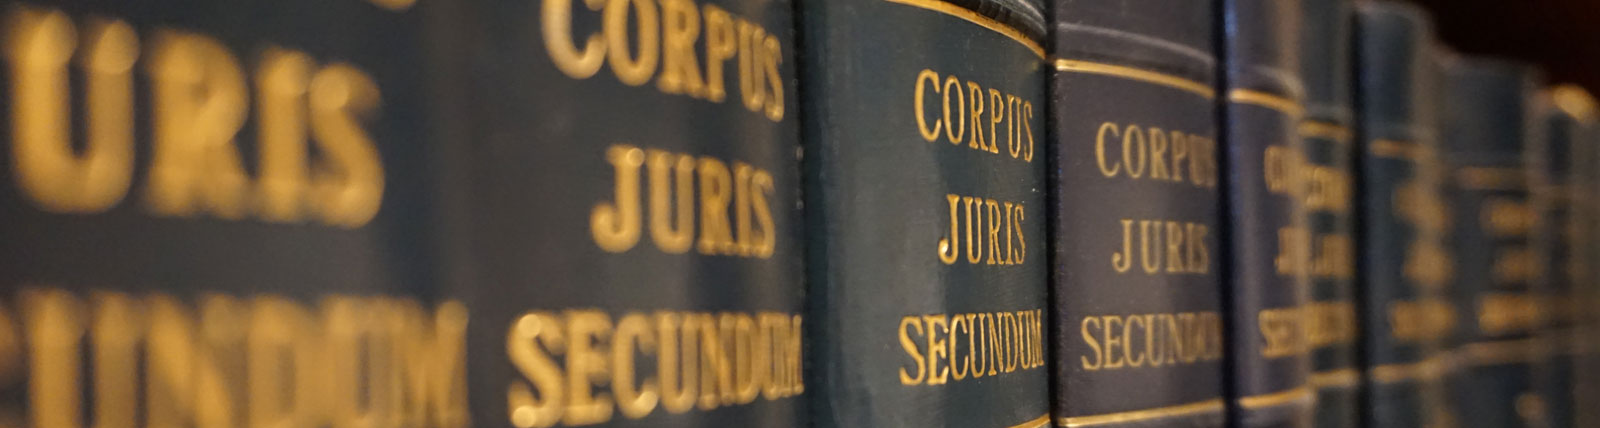 Corpus Juris Secundum books